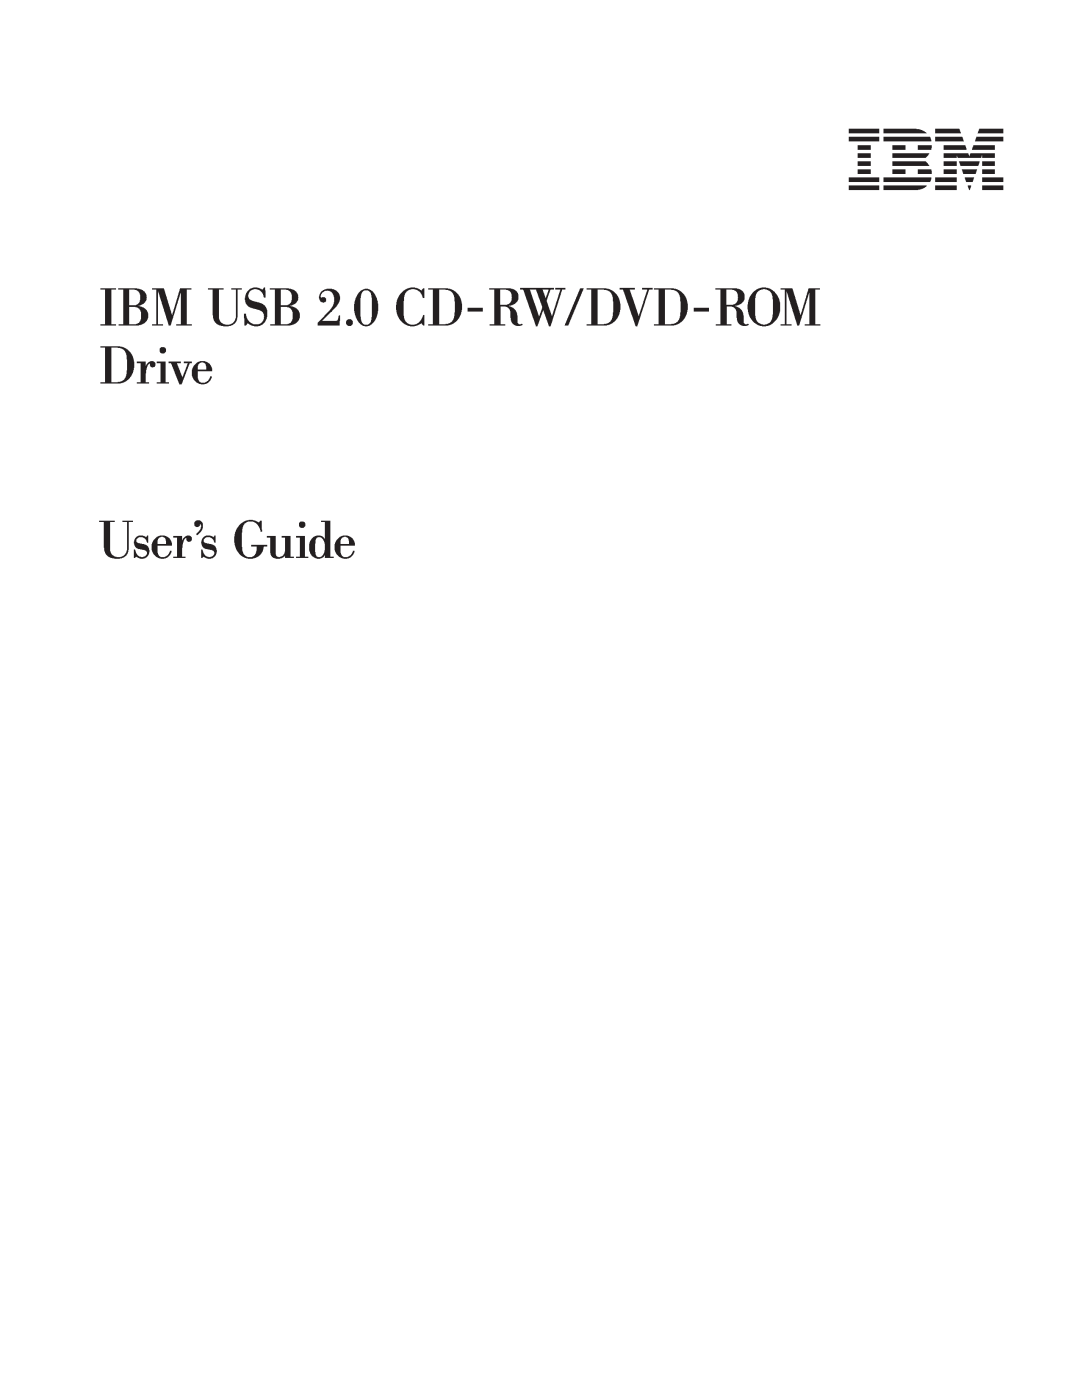 IBM 73P4518 manual IBM USB 2.0 CD-RW/DVD-ROM Drive User’s Guide 